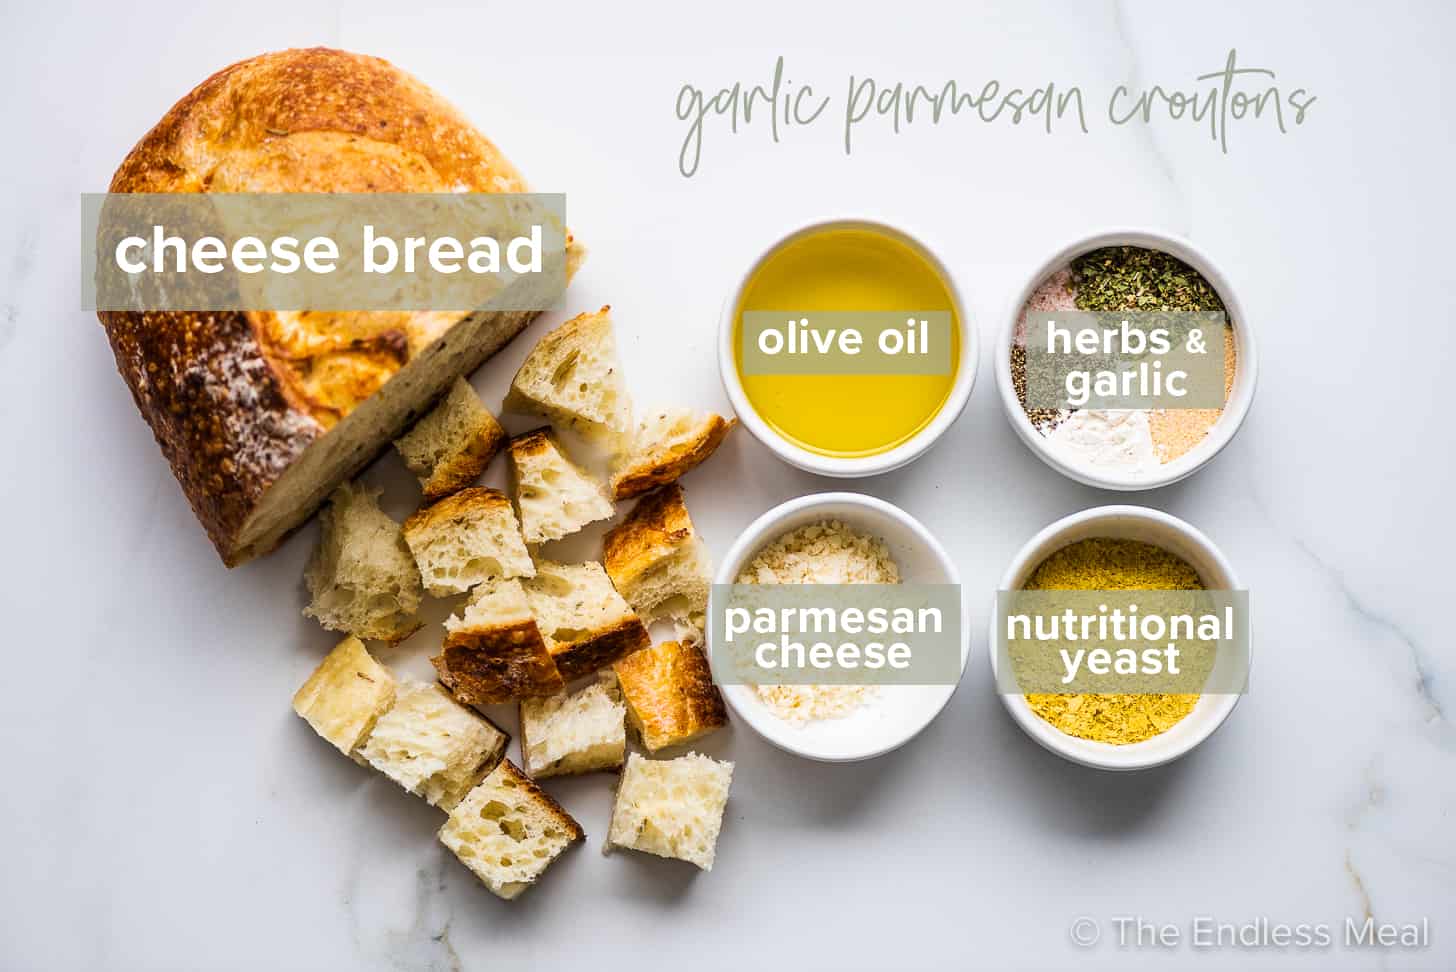 The ingredients to make garlic parmesan croutons